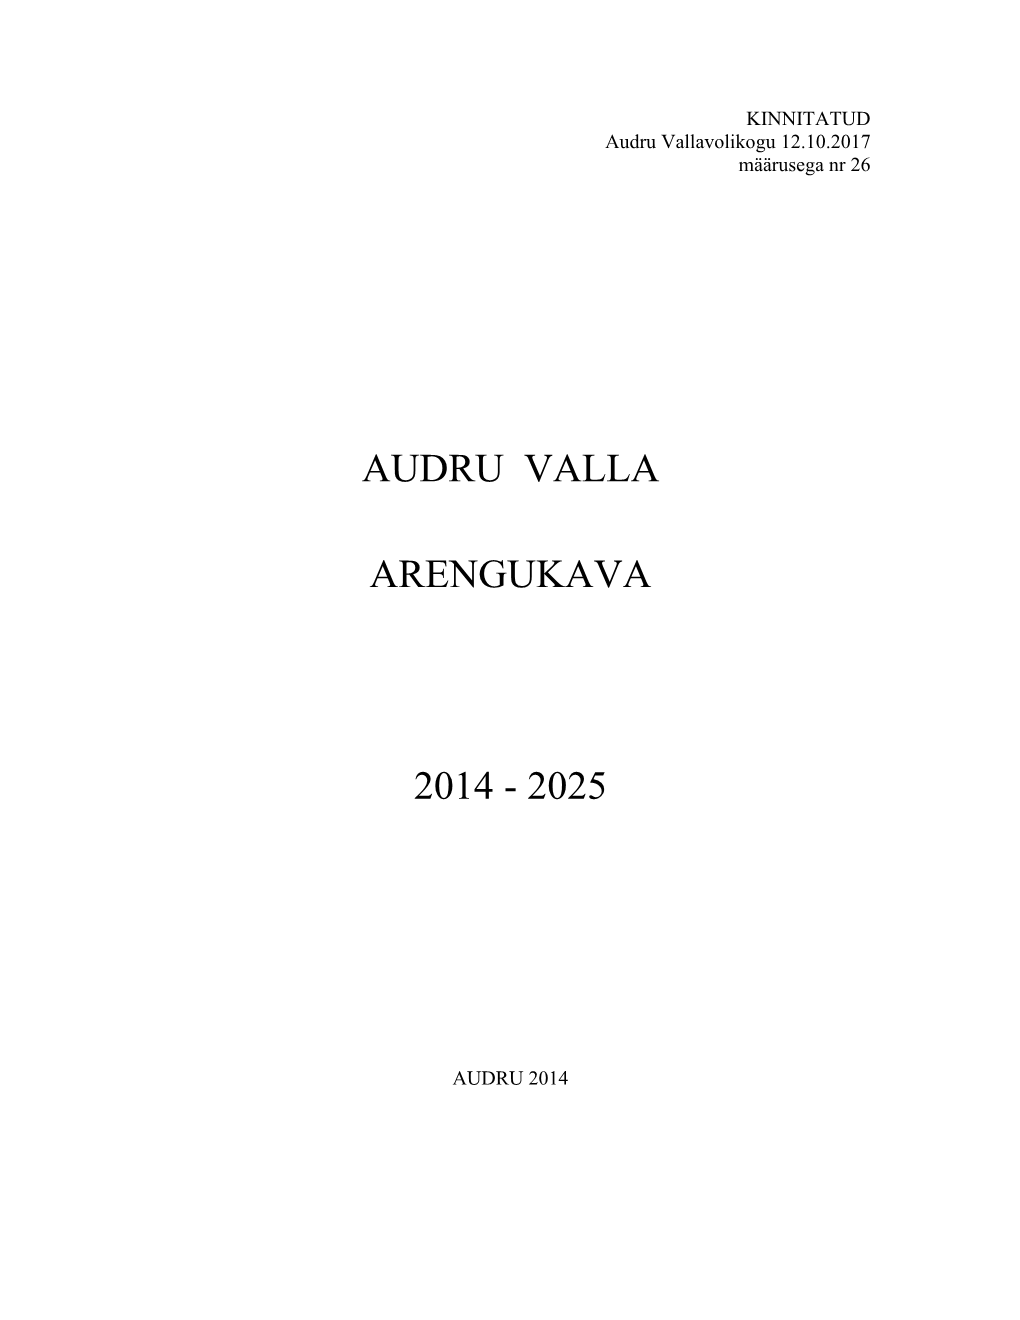 Audru Valla Arengukava 2014 - 2025